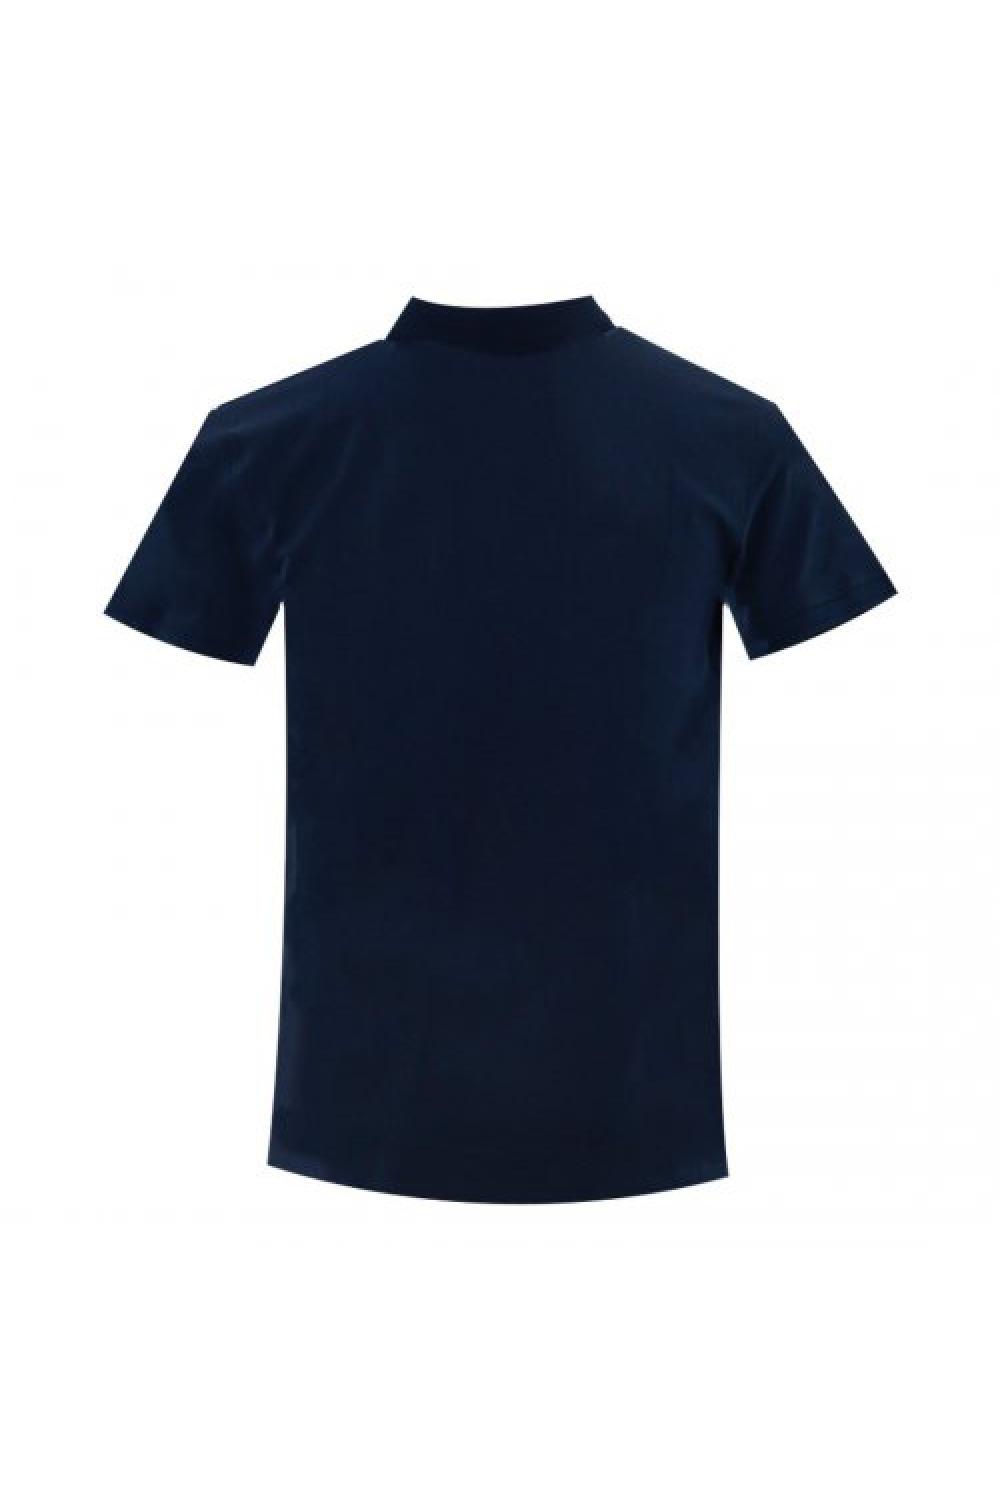 SELECTED T-shirt Polo Slhaze Men - Navy Blazer (16082840)